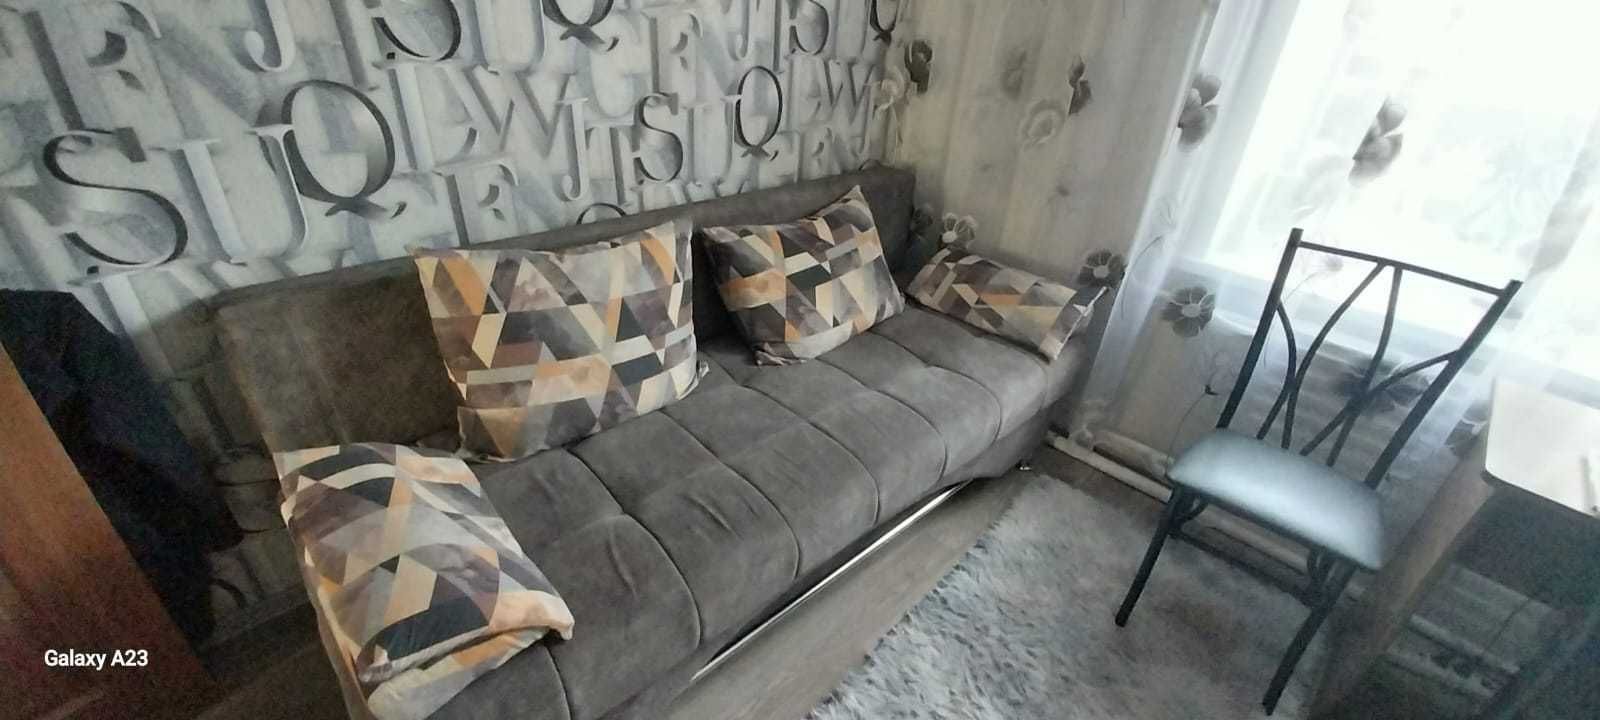 Продам диван-софа б/у, в отл. сост., расцветка "Город", цена 40 000 т.